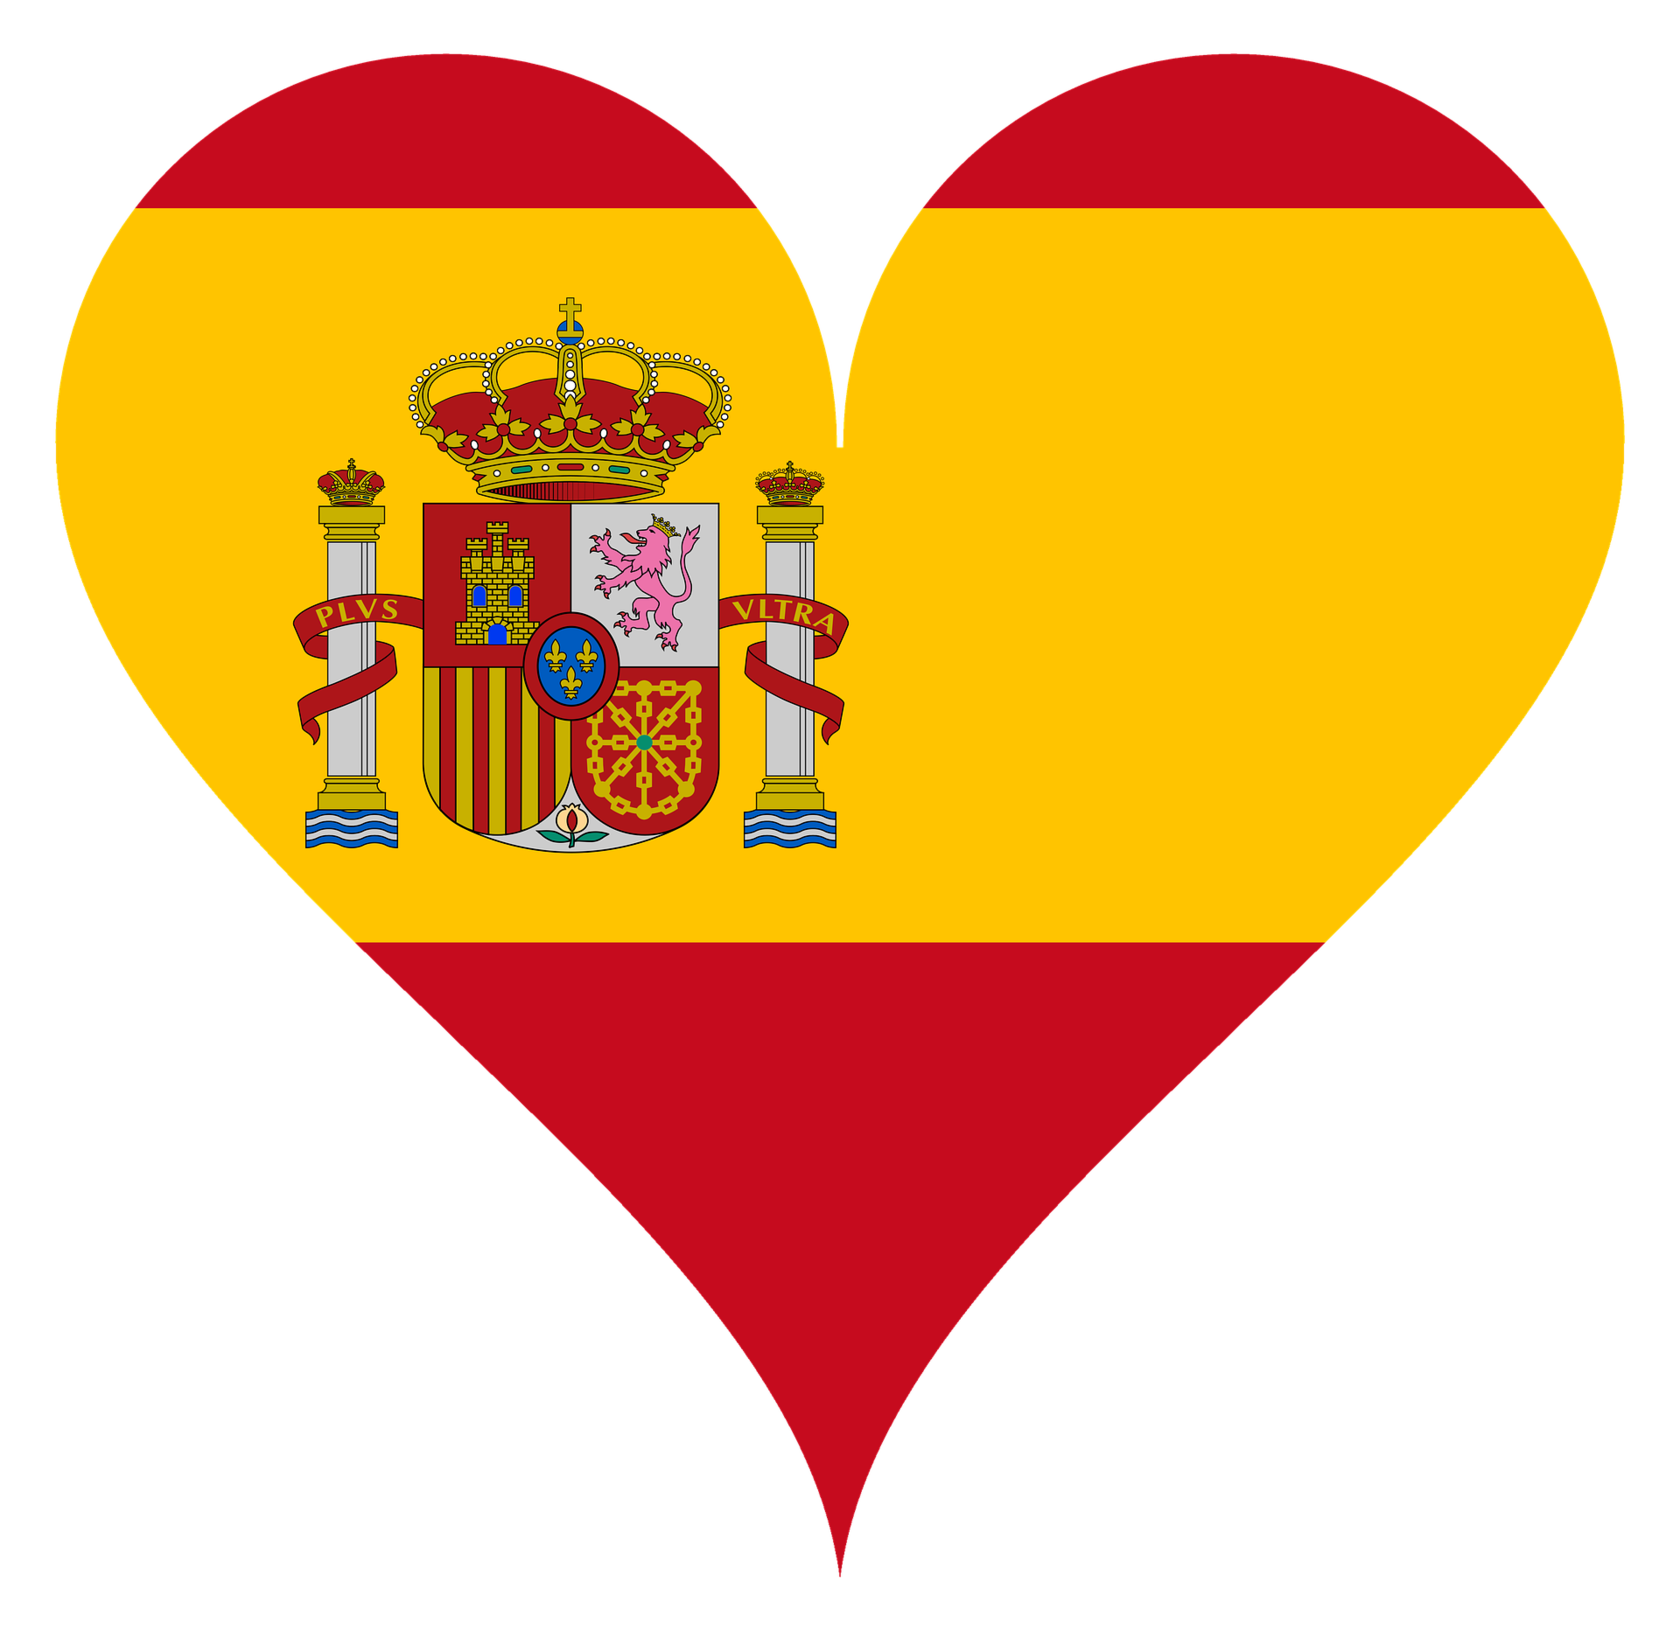 Love spain. Сердце Испании. Символ испанского языка. Сердечко Испания. Испанский флаг в сердечке.